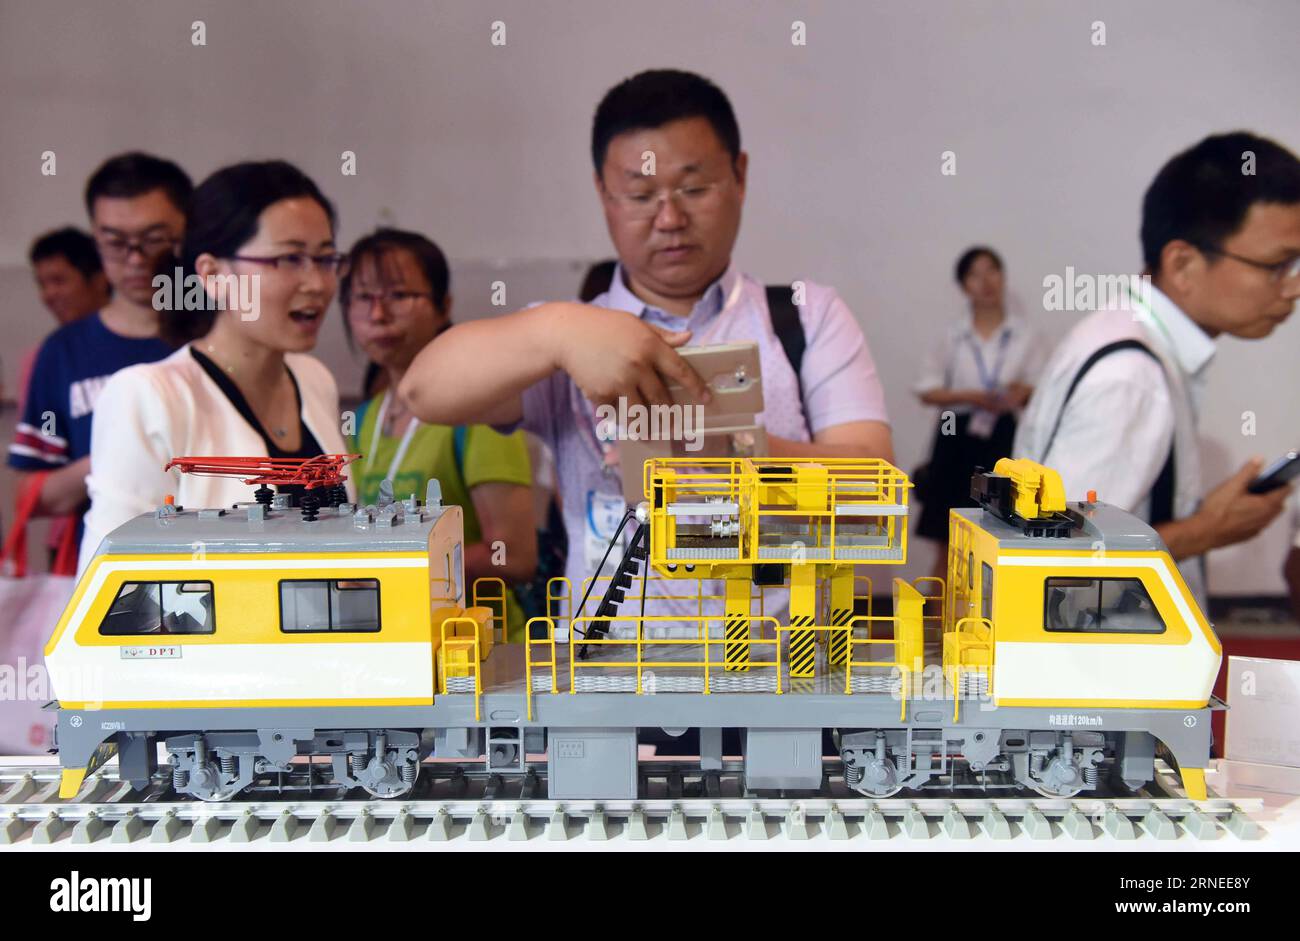 (160620) -- PECHINO, 20 giugno 2016 -- Un visitatore scatta foto di un modello di un'auto per la manutenzione della catenaria alla mostra Modern Railways 2016 a Pechino, capitale della Cina, 20 giugno 2016. La mostra di tre giorni è iniziata qui lunedì. ) (Zkr) CHINA-BEIJING-RAILWAYS-EXHIBITION(CN) ChenxYehua PUBLICATIONxNOTxINxCHN 160620 Pechino 20 giugno 2016 un visitatore scatta foto di un modello di un'auto per la manutenzione della catenaria ALLA Exhibition Modern Railways 2016 di Pechino capitale della Cina 20 giugno 2016 la mostra di tre giorni è iniziata qui lunedì CCR China Beijing Railways Exhibition CN ChenxYehua PUBLICATIONxN Foto Stock